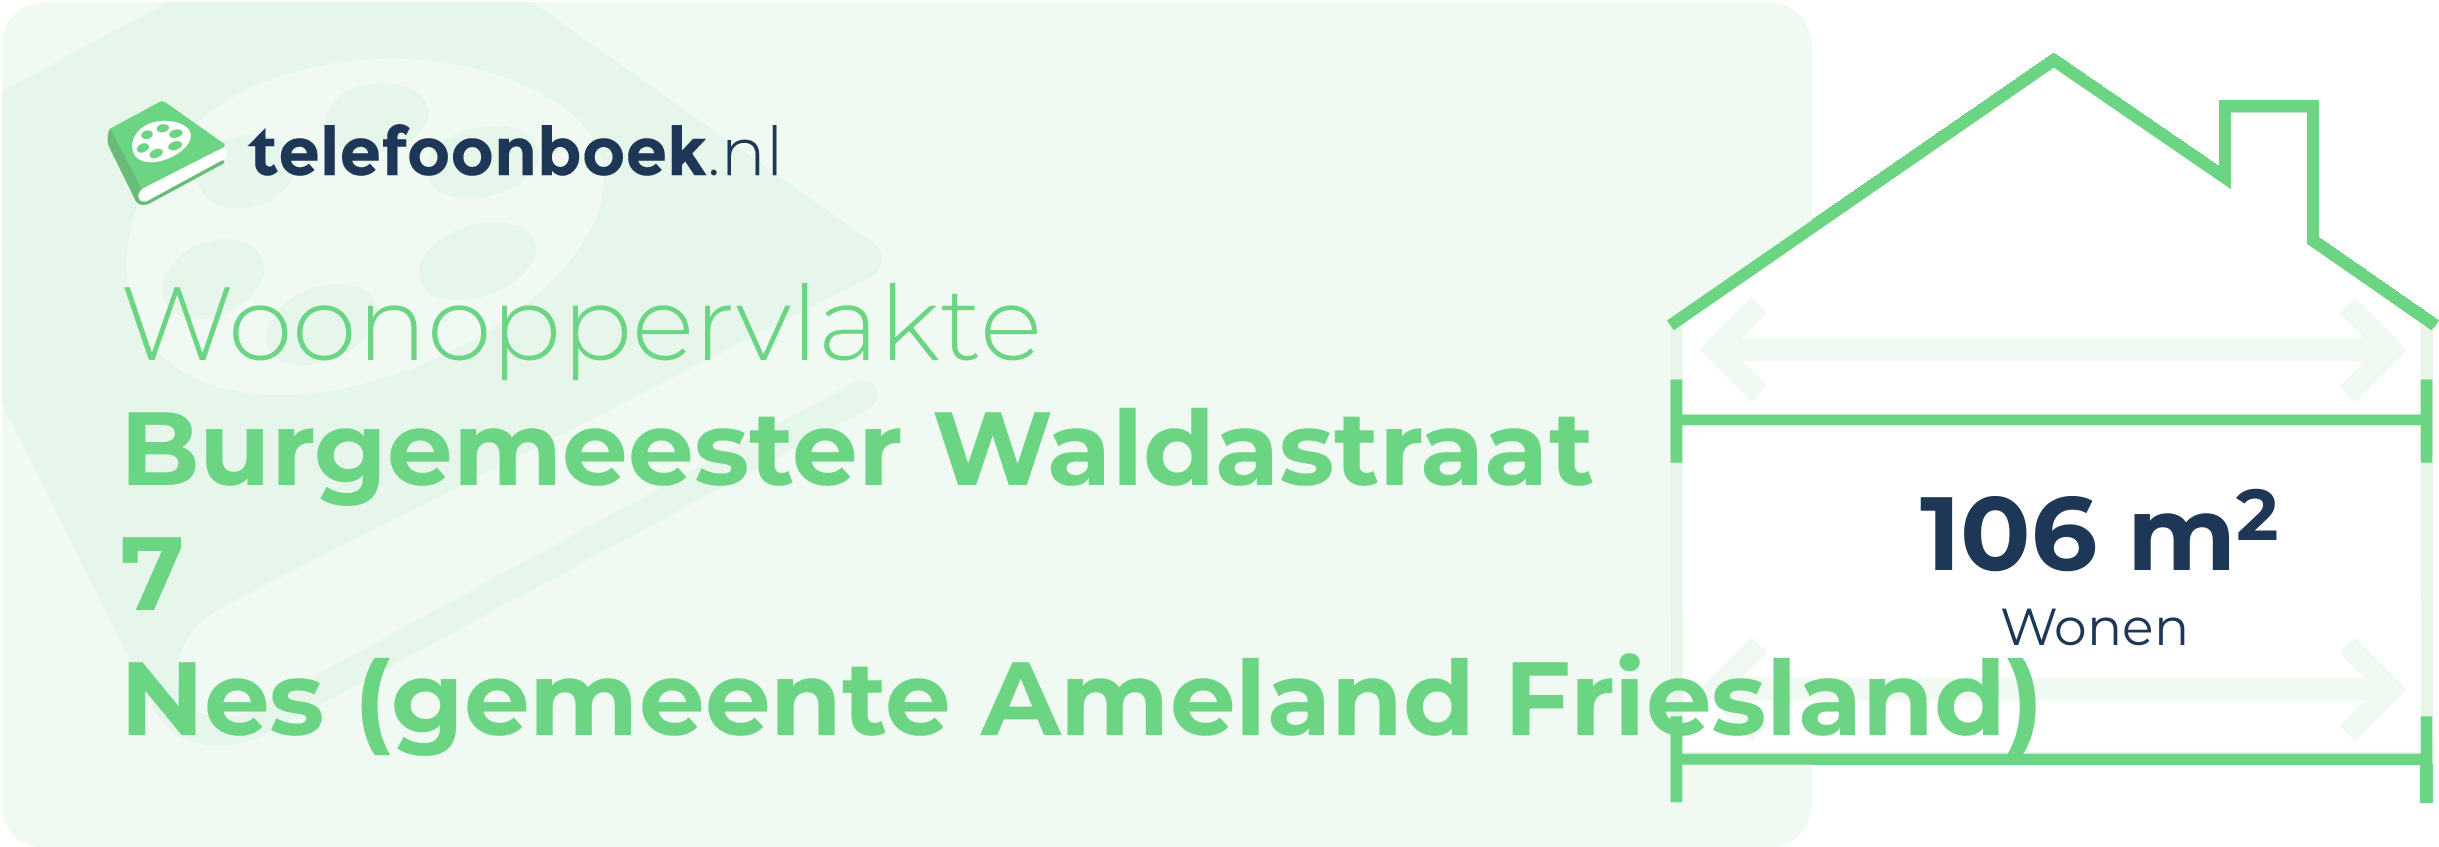 Woonoppervlakte Burgemeester Waldastraat 7 Nes (gemeente Ameland Friesland)